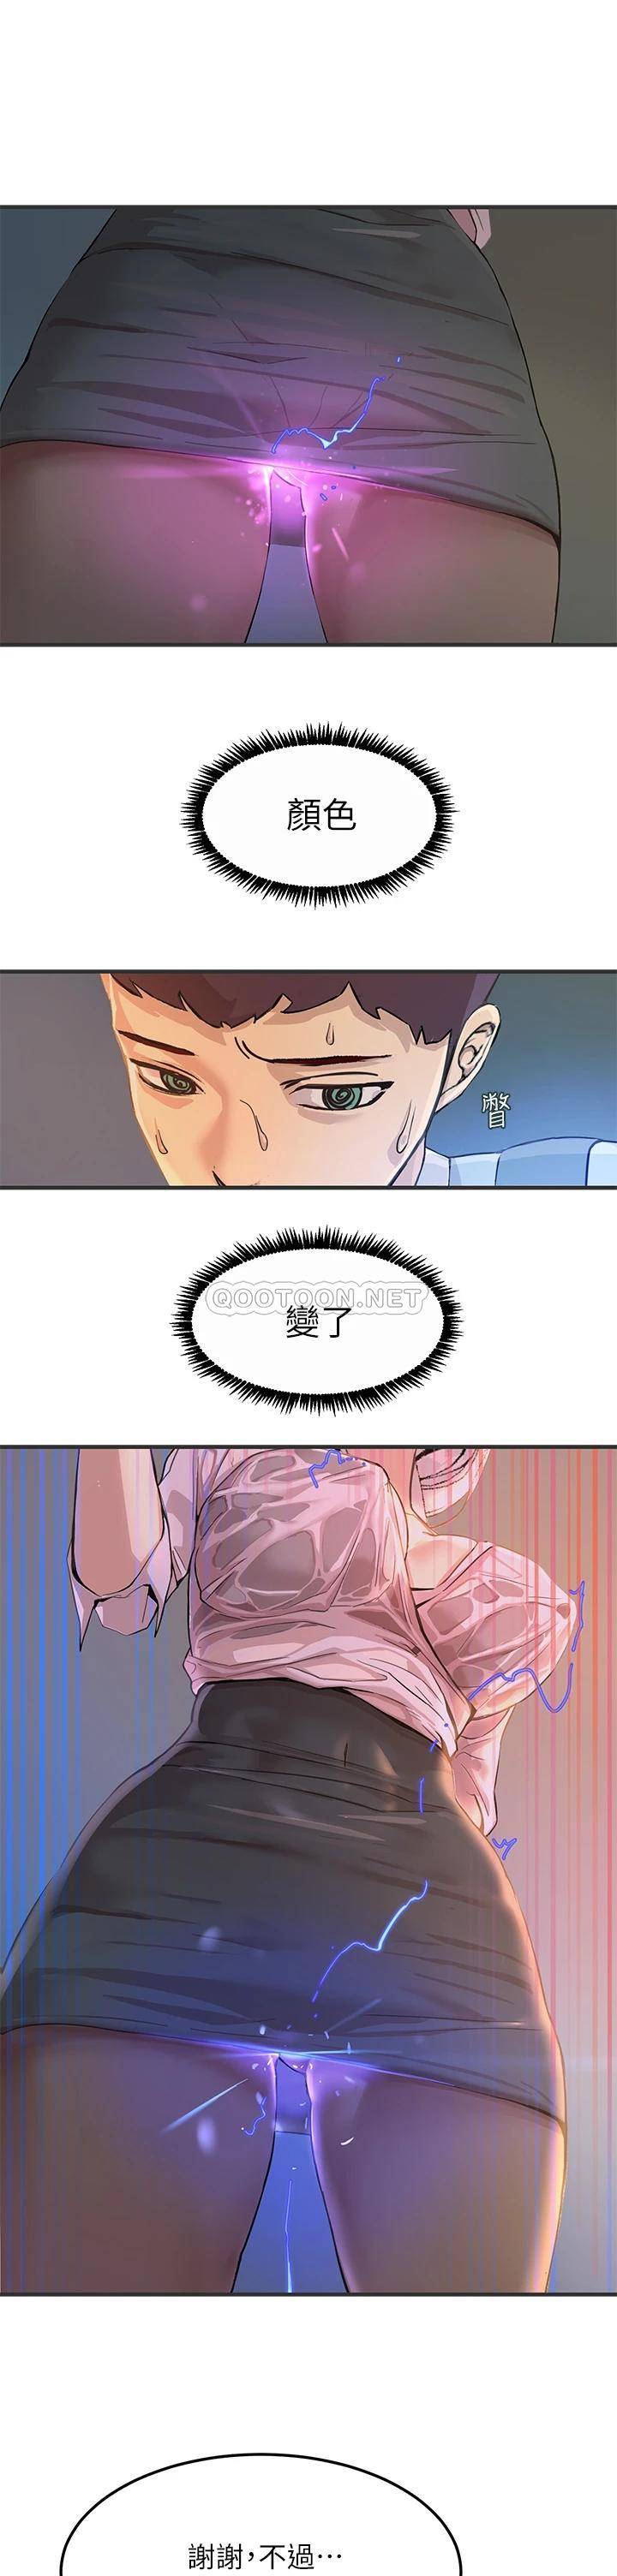 韩国污漫画 觸電大師 第1话 一览无遗的性敏感带 46